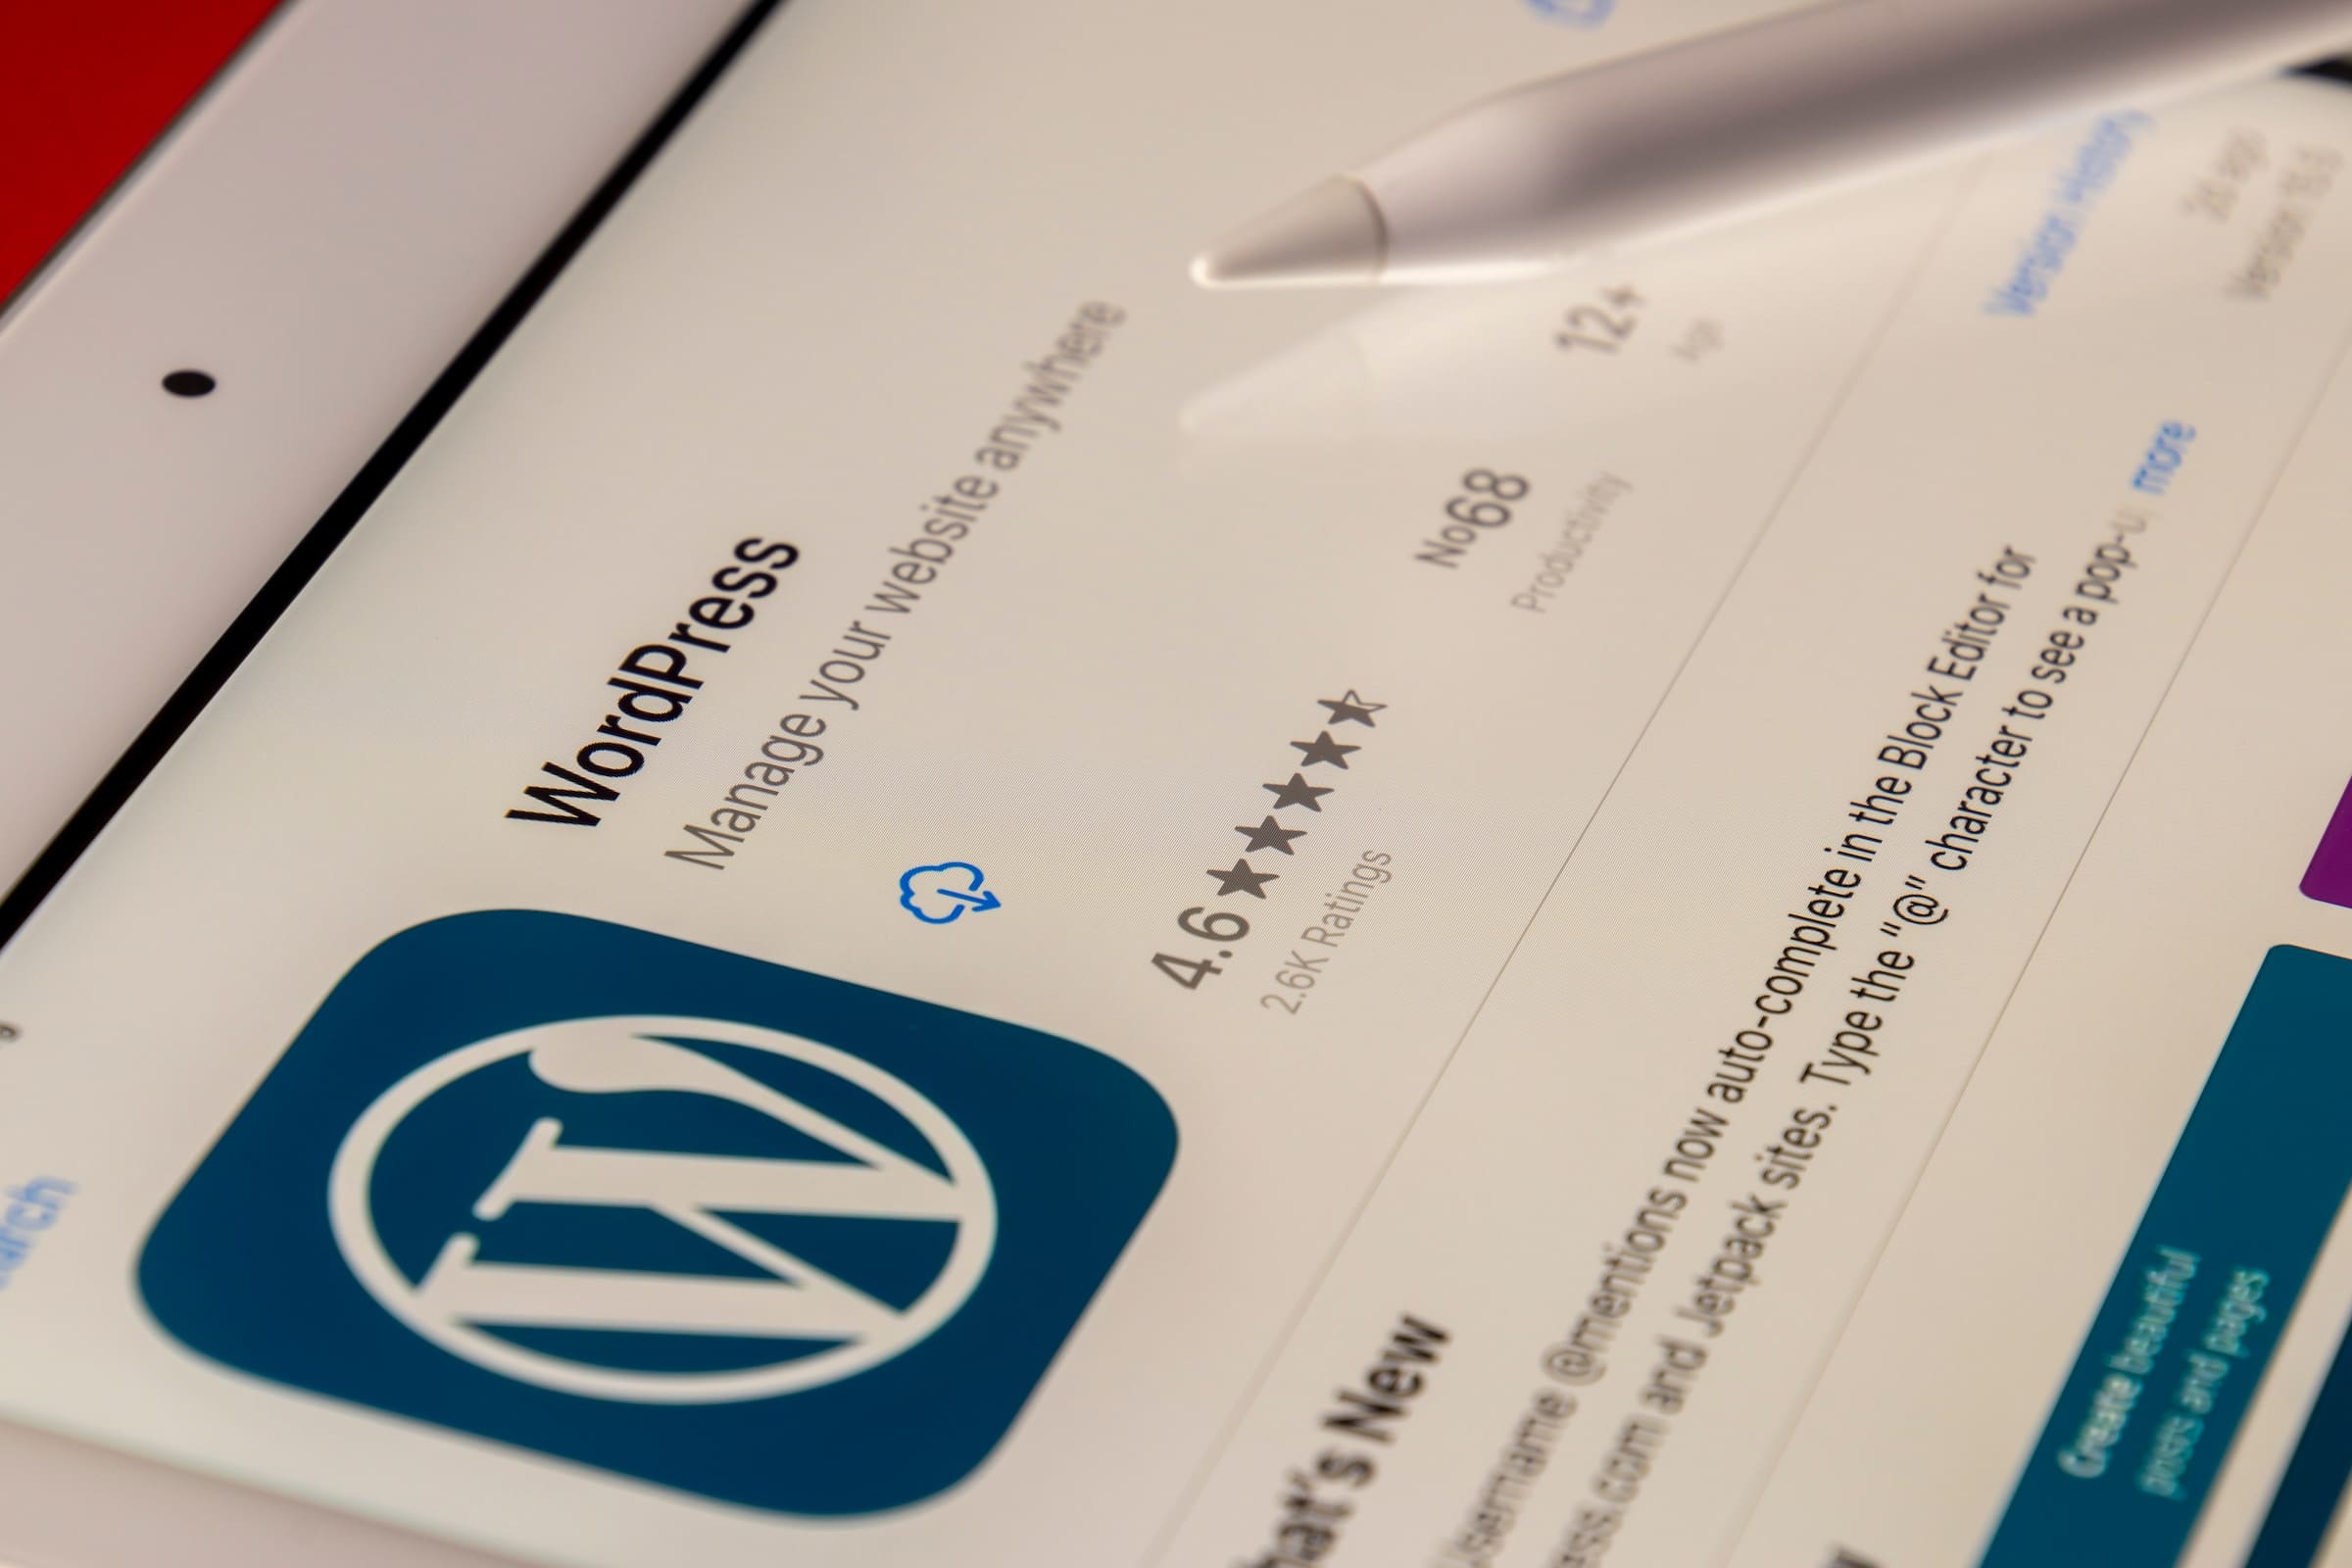 WordPress est l'une des plateformes de gestion de contenu les plus populaires au monde, alimentant des millions de sites web. Devenir développeur WordPress est une voie prometteuse pour ceux qui souhaitent créer des sites web, personnaliser des thèmes, et développer des fonctionnalités.